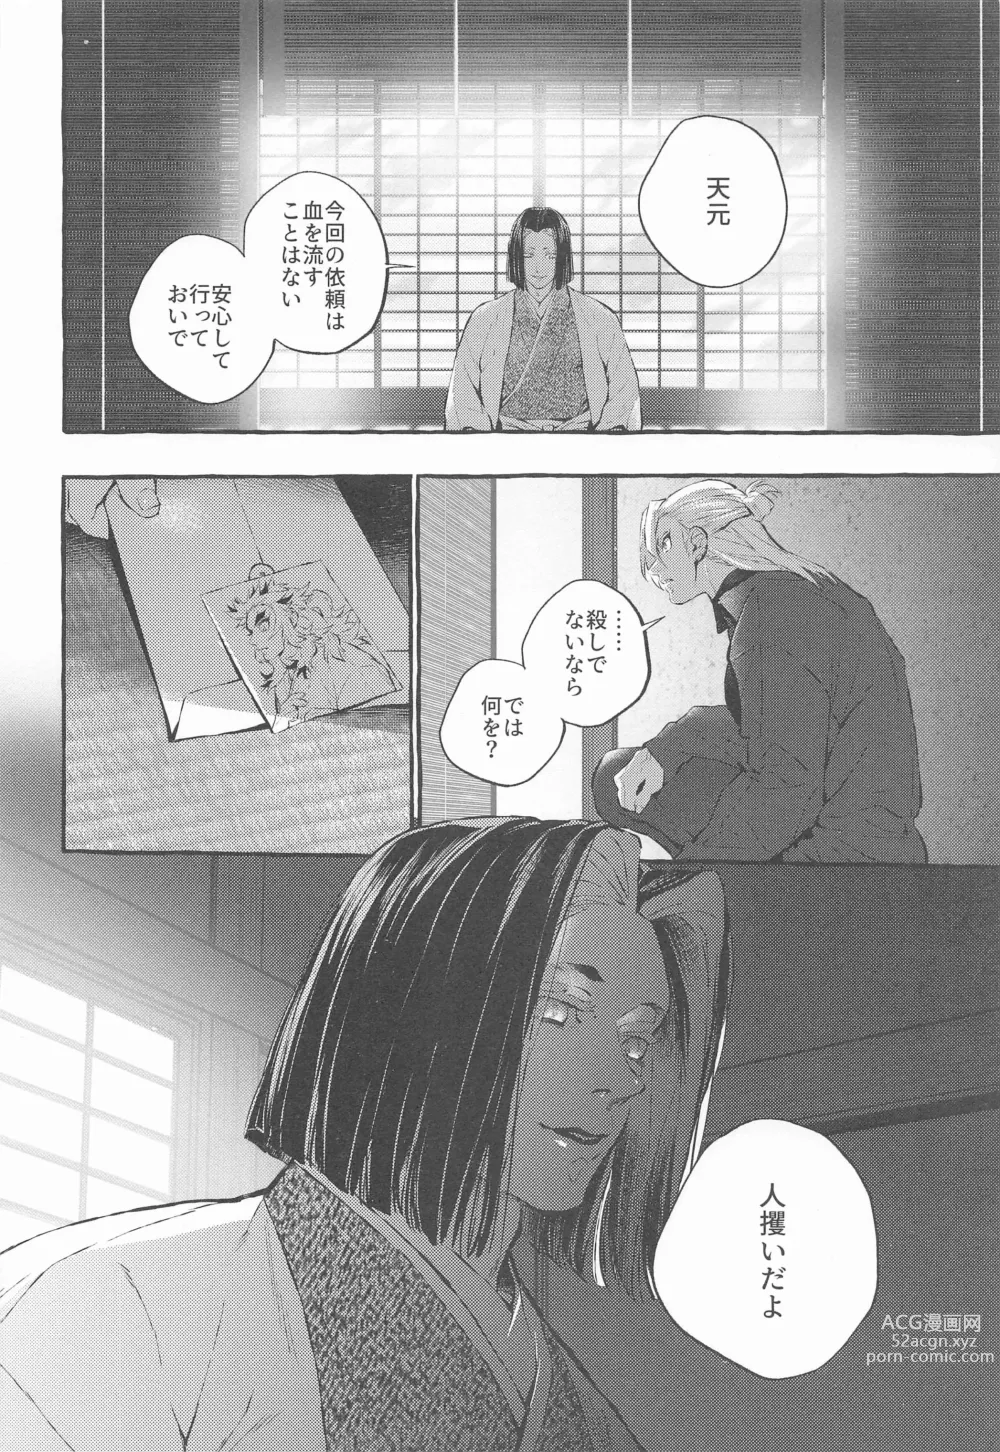 Page 5 of doujinshi beibisutorangurazu／kaikabetsuatsuraebangaihenhabutae